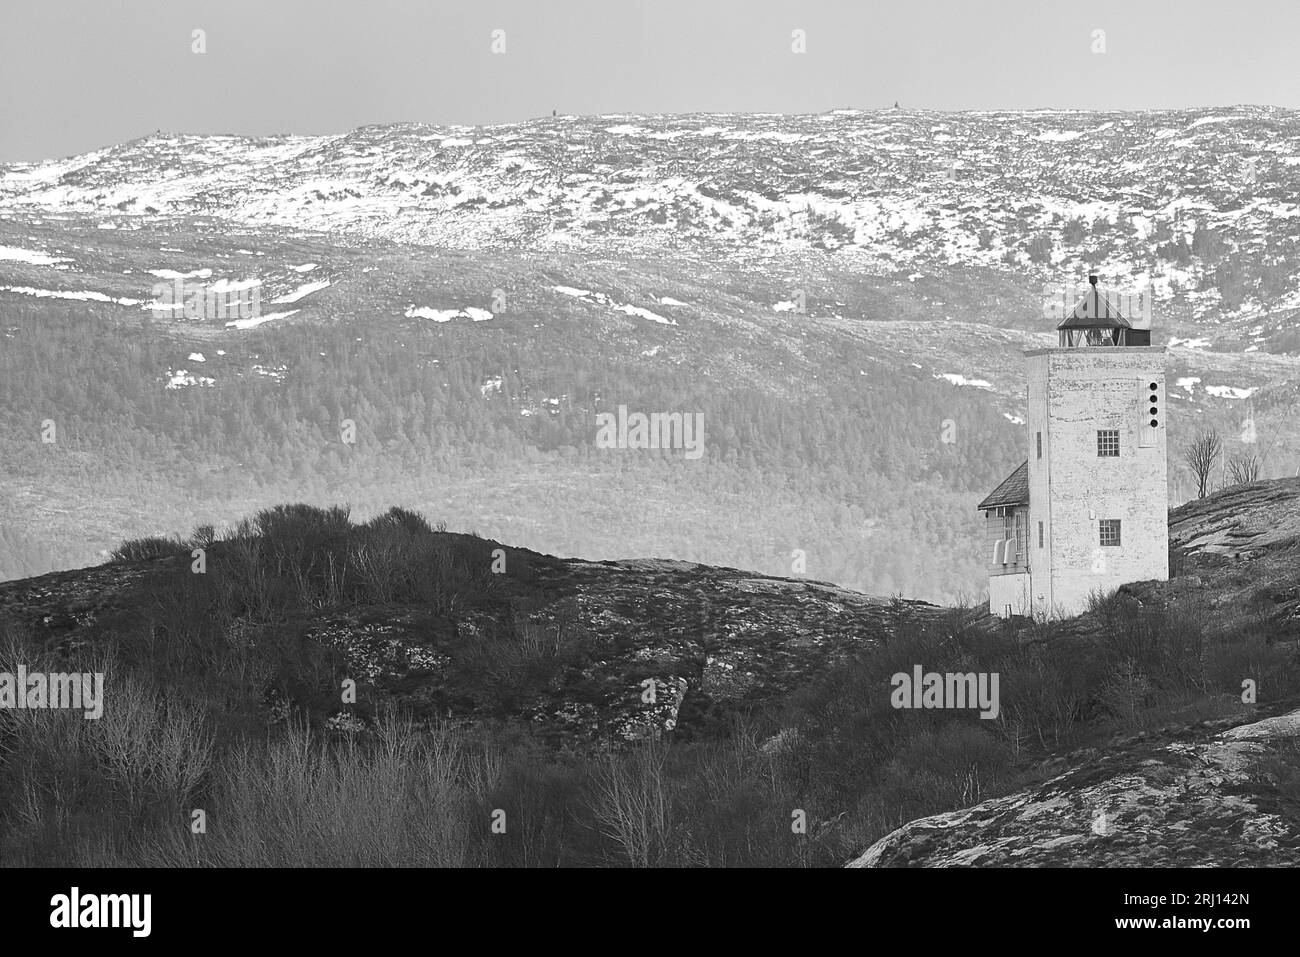 Foto in bianco e nero del faro di Agdenes (Ringflua), costruito nel 1804, si trova all'ingresso del fiordo di Trondheim (Trondheimsfjord), Norvegia. Foto Stock